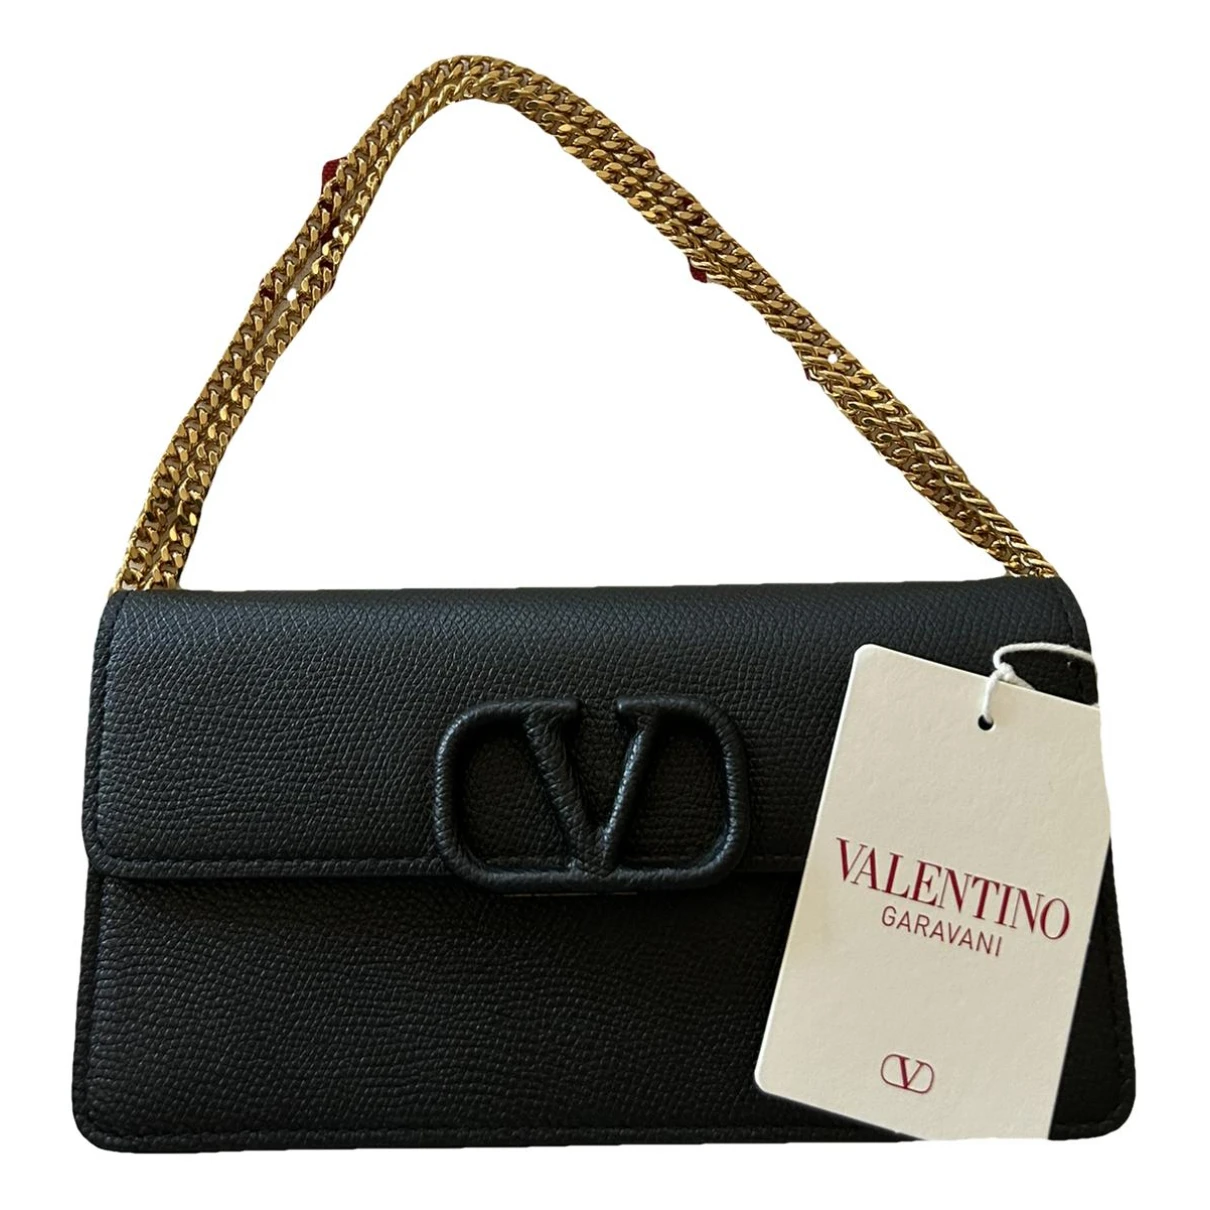 Pre-owned Valentino Garavani Leather Crossbody Bag In Black